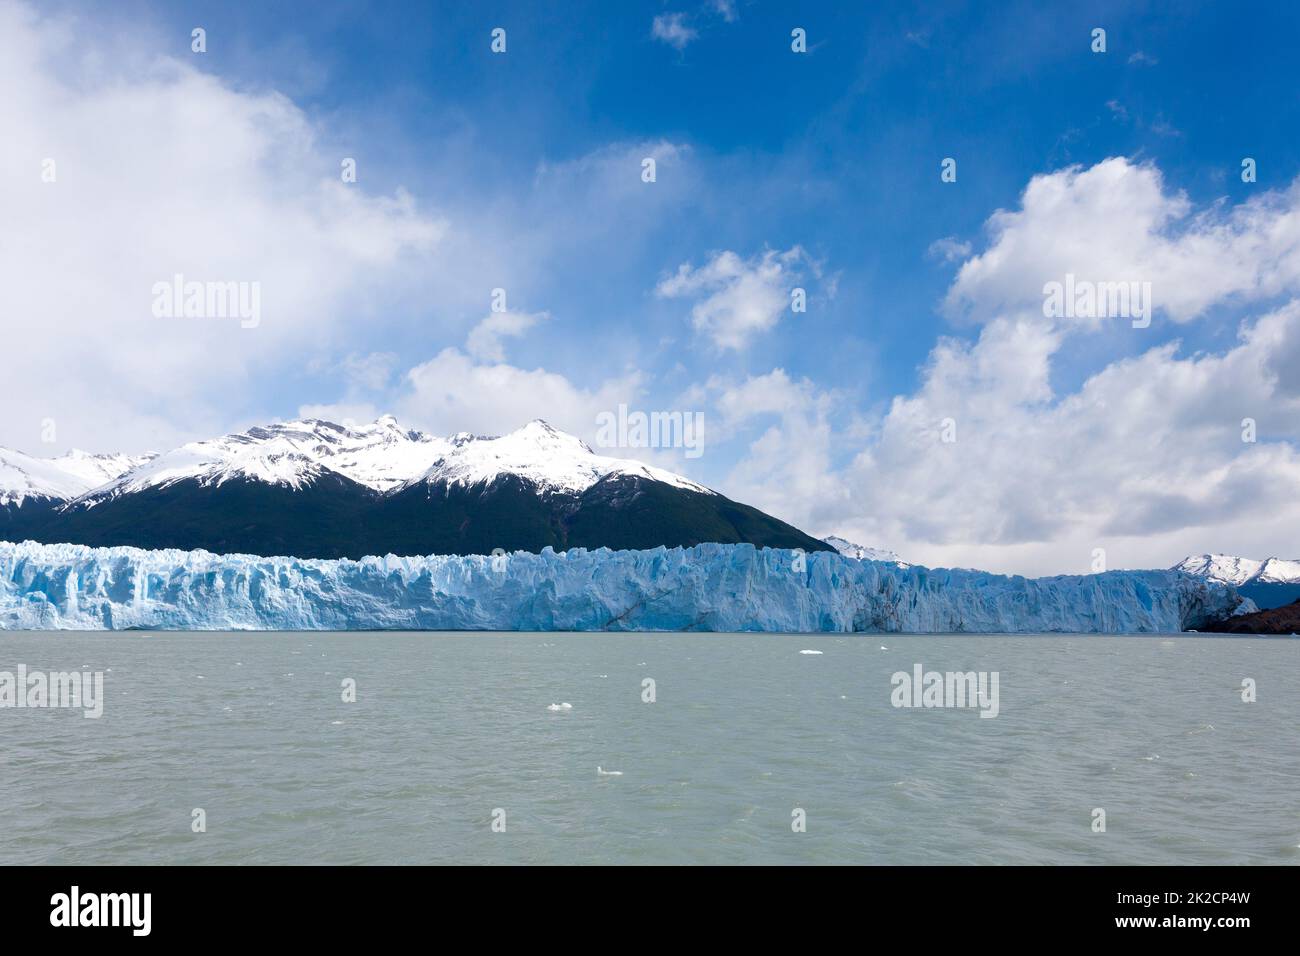 Perito Moreno glacier view, Patagonia scenery, Argentina Stock Photo